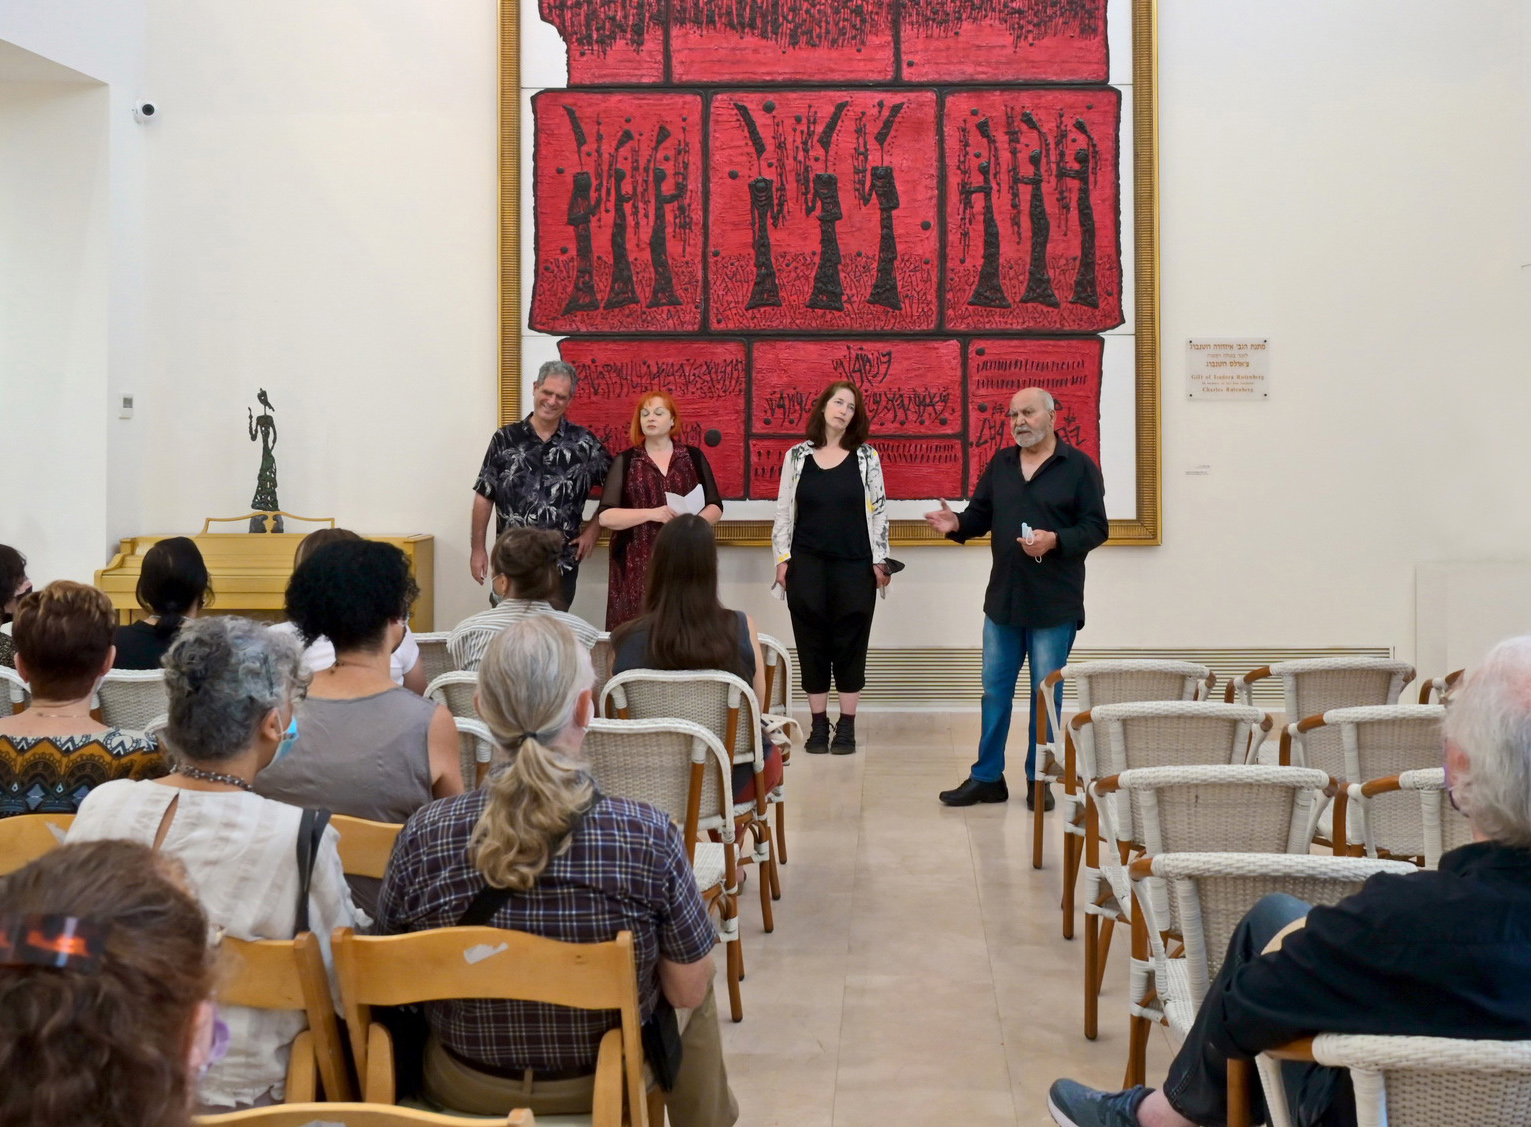 גלריה אגריפס 12, פתיחת תערוכת המחווה למשה קסטל, במוזיאון הצייר משה קסטל